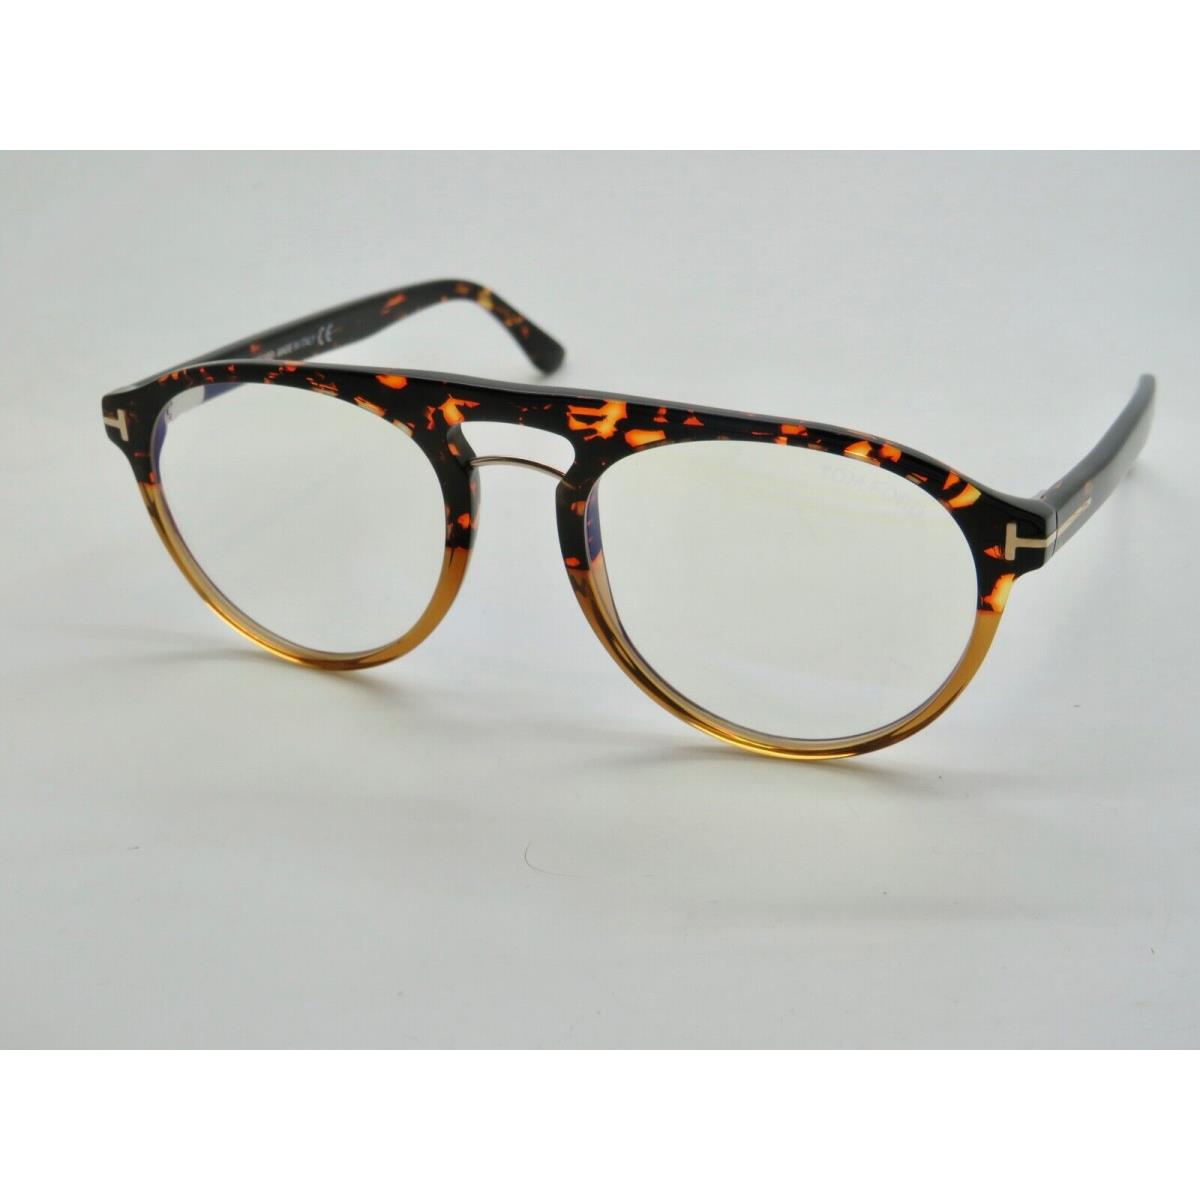 Tom Ford eyeglasses  - Havana-Brown Gradient Frame 0